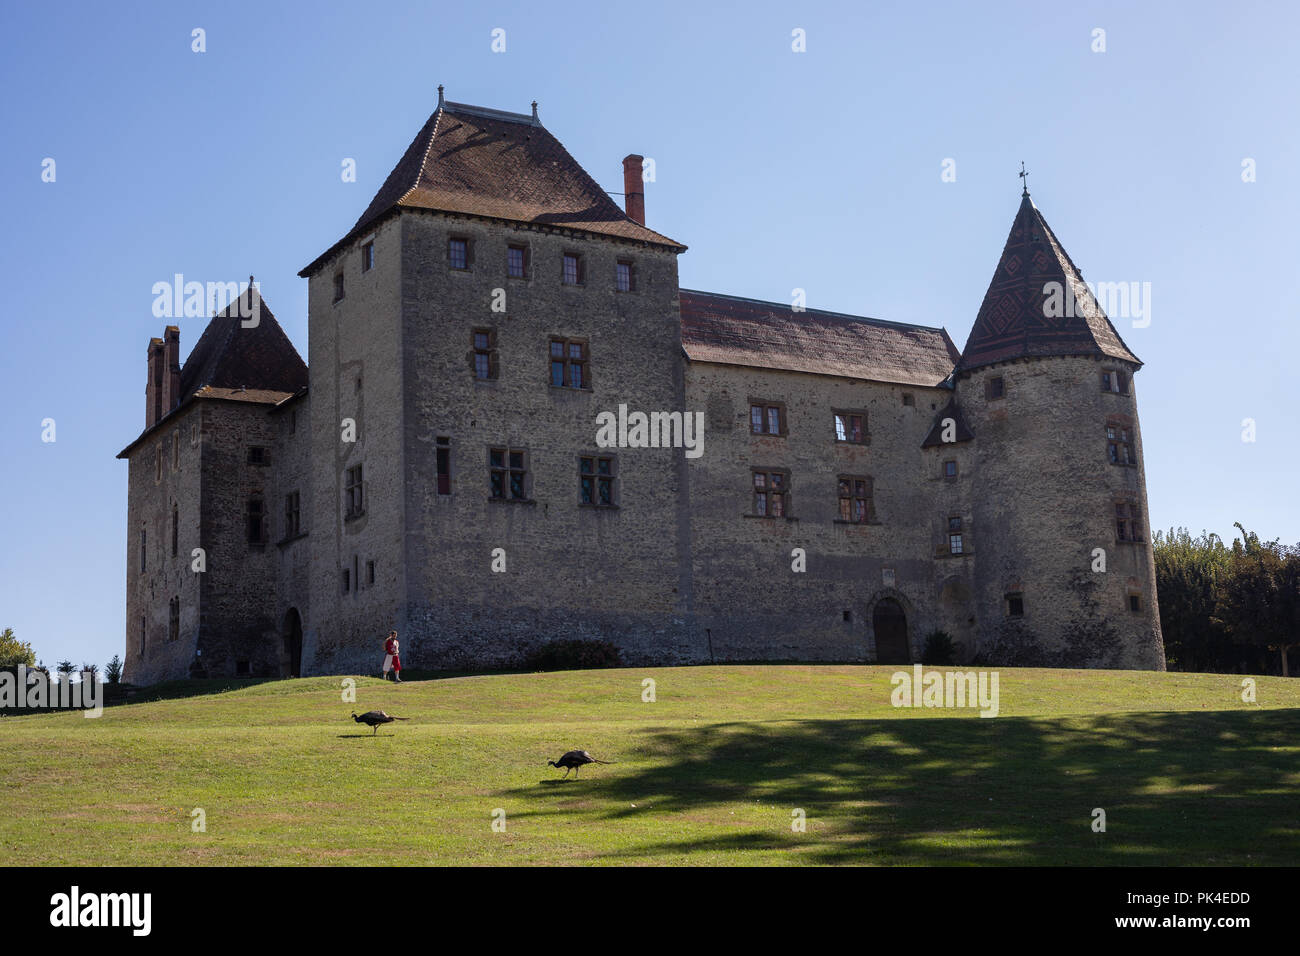 SEPTEME SCHLOSS, Frankreich - 9. SEPTEMBER 2018: Septeme Schloss mit seinem Besitzer und zwei Pfaue Stockfoto